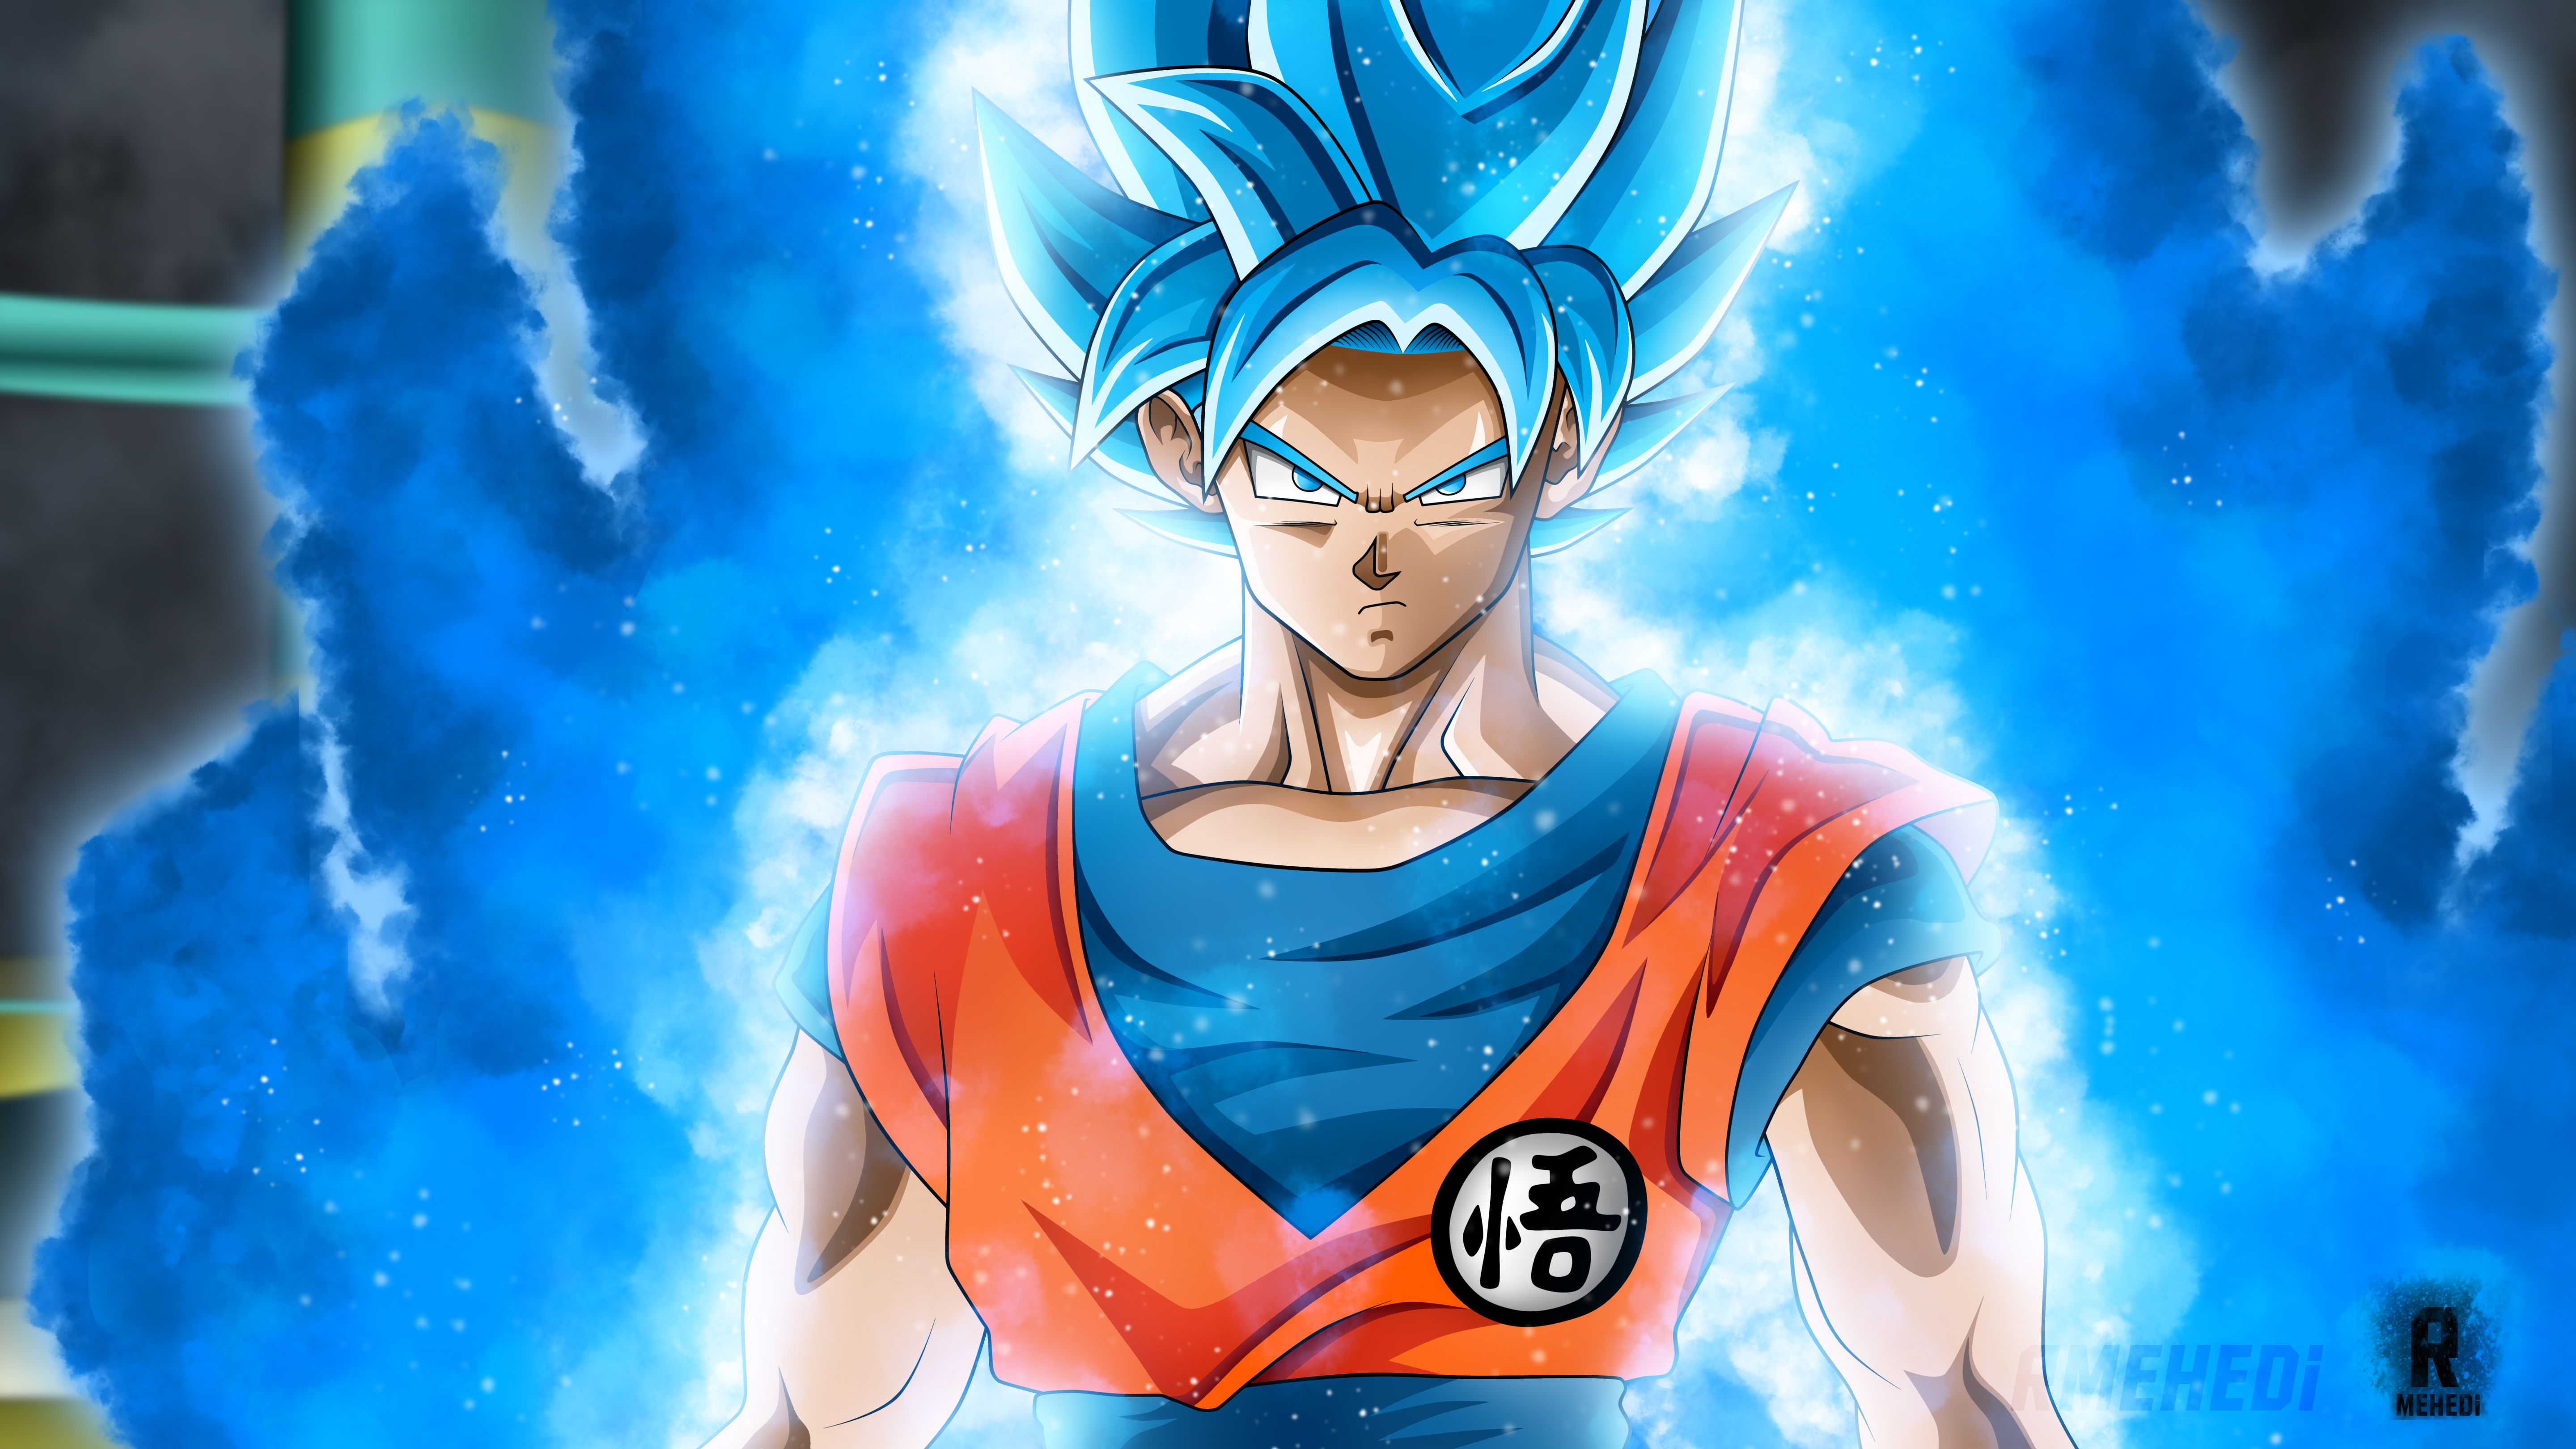 1080p Goku Super Saiyan Wallpaper HD